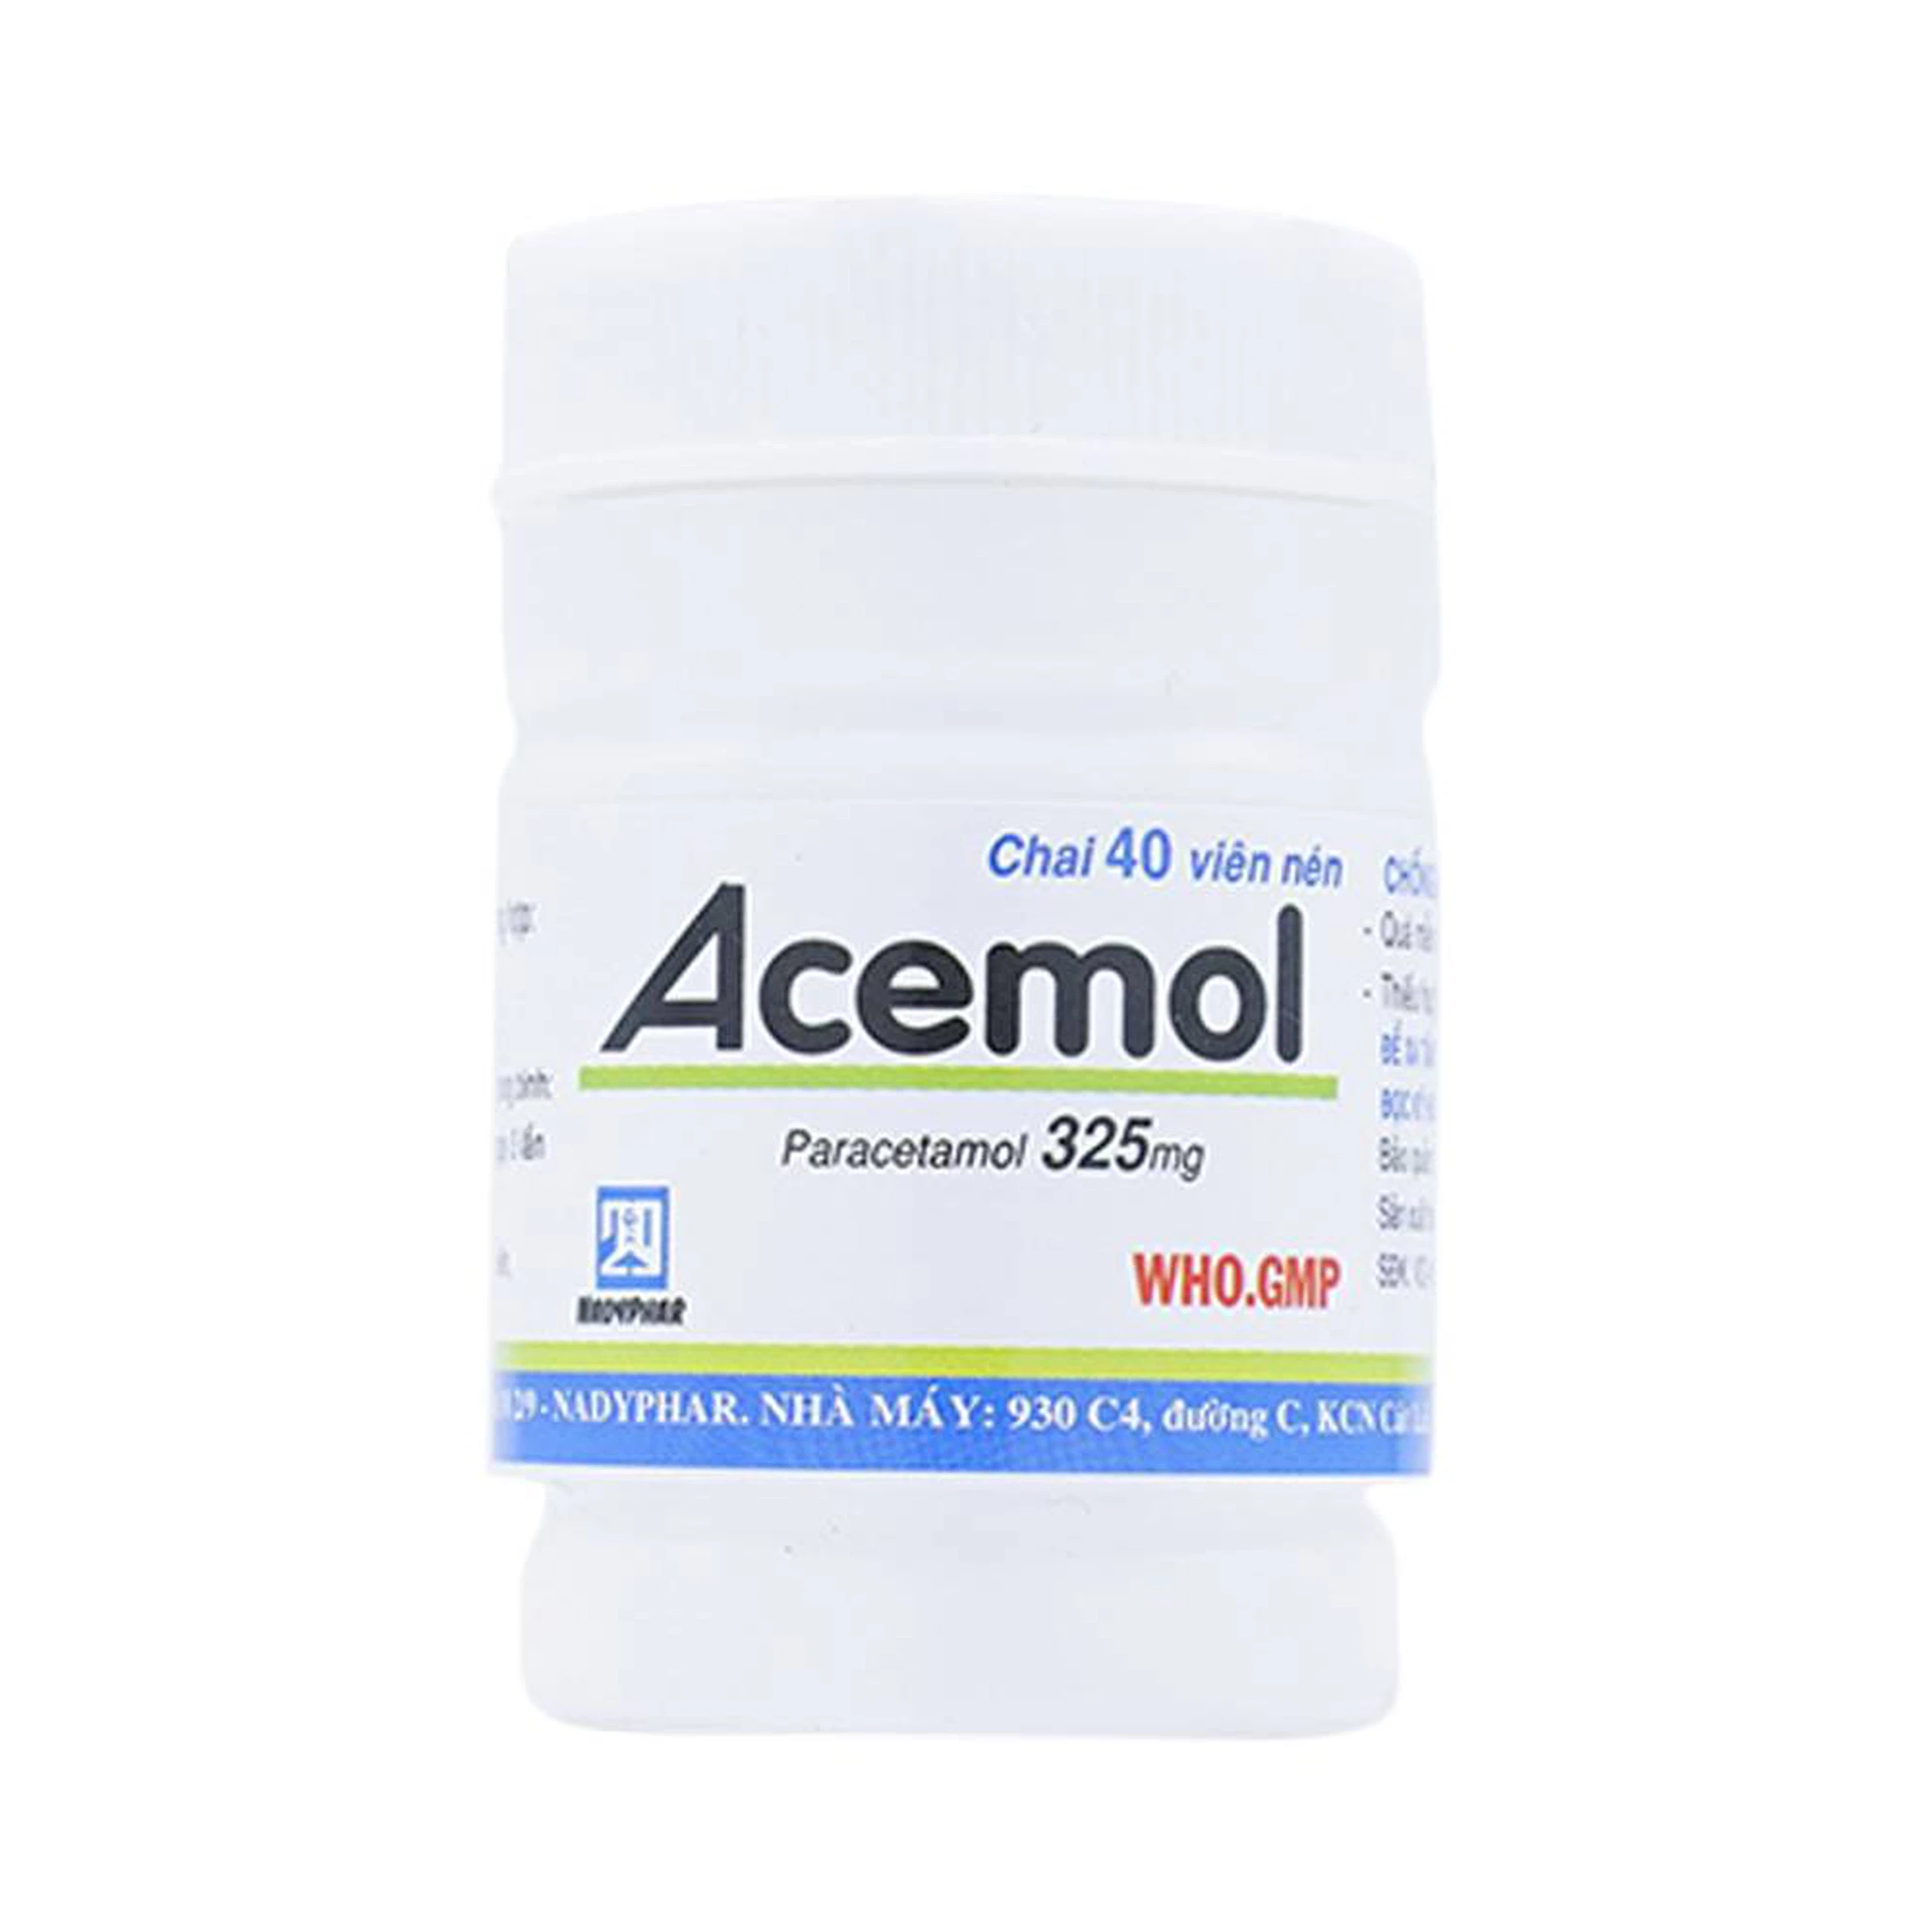 Thuốc Acemol 325mg Nadyphar hạ sốt và giảm đau (40 viên)